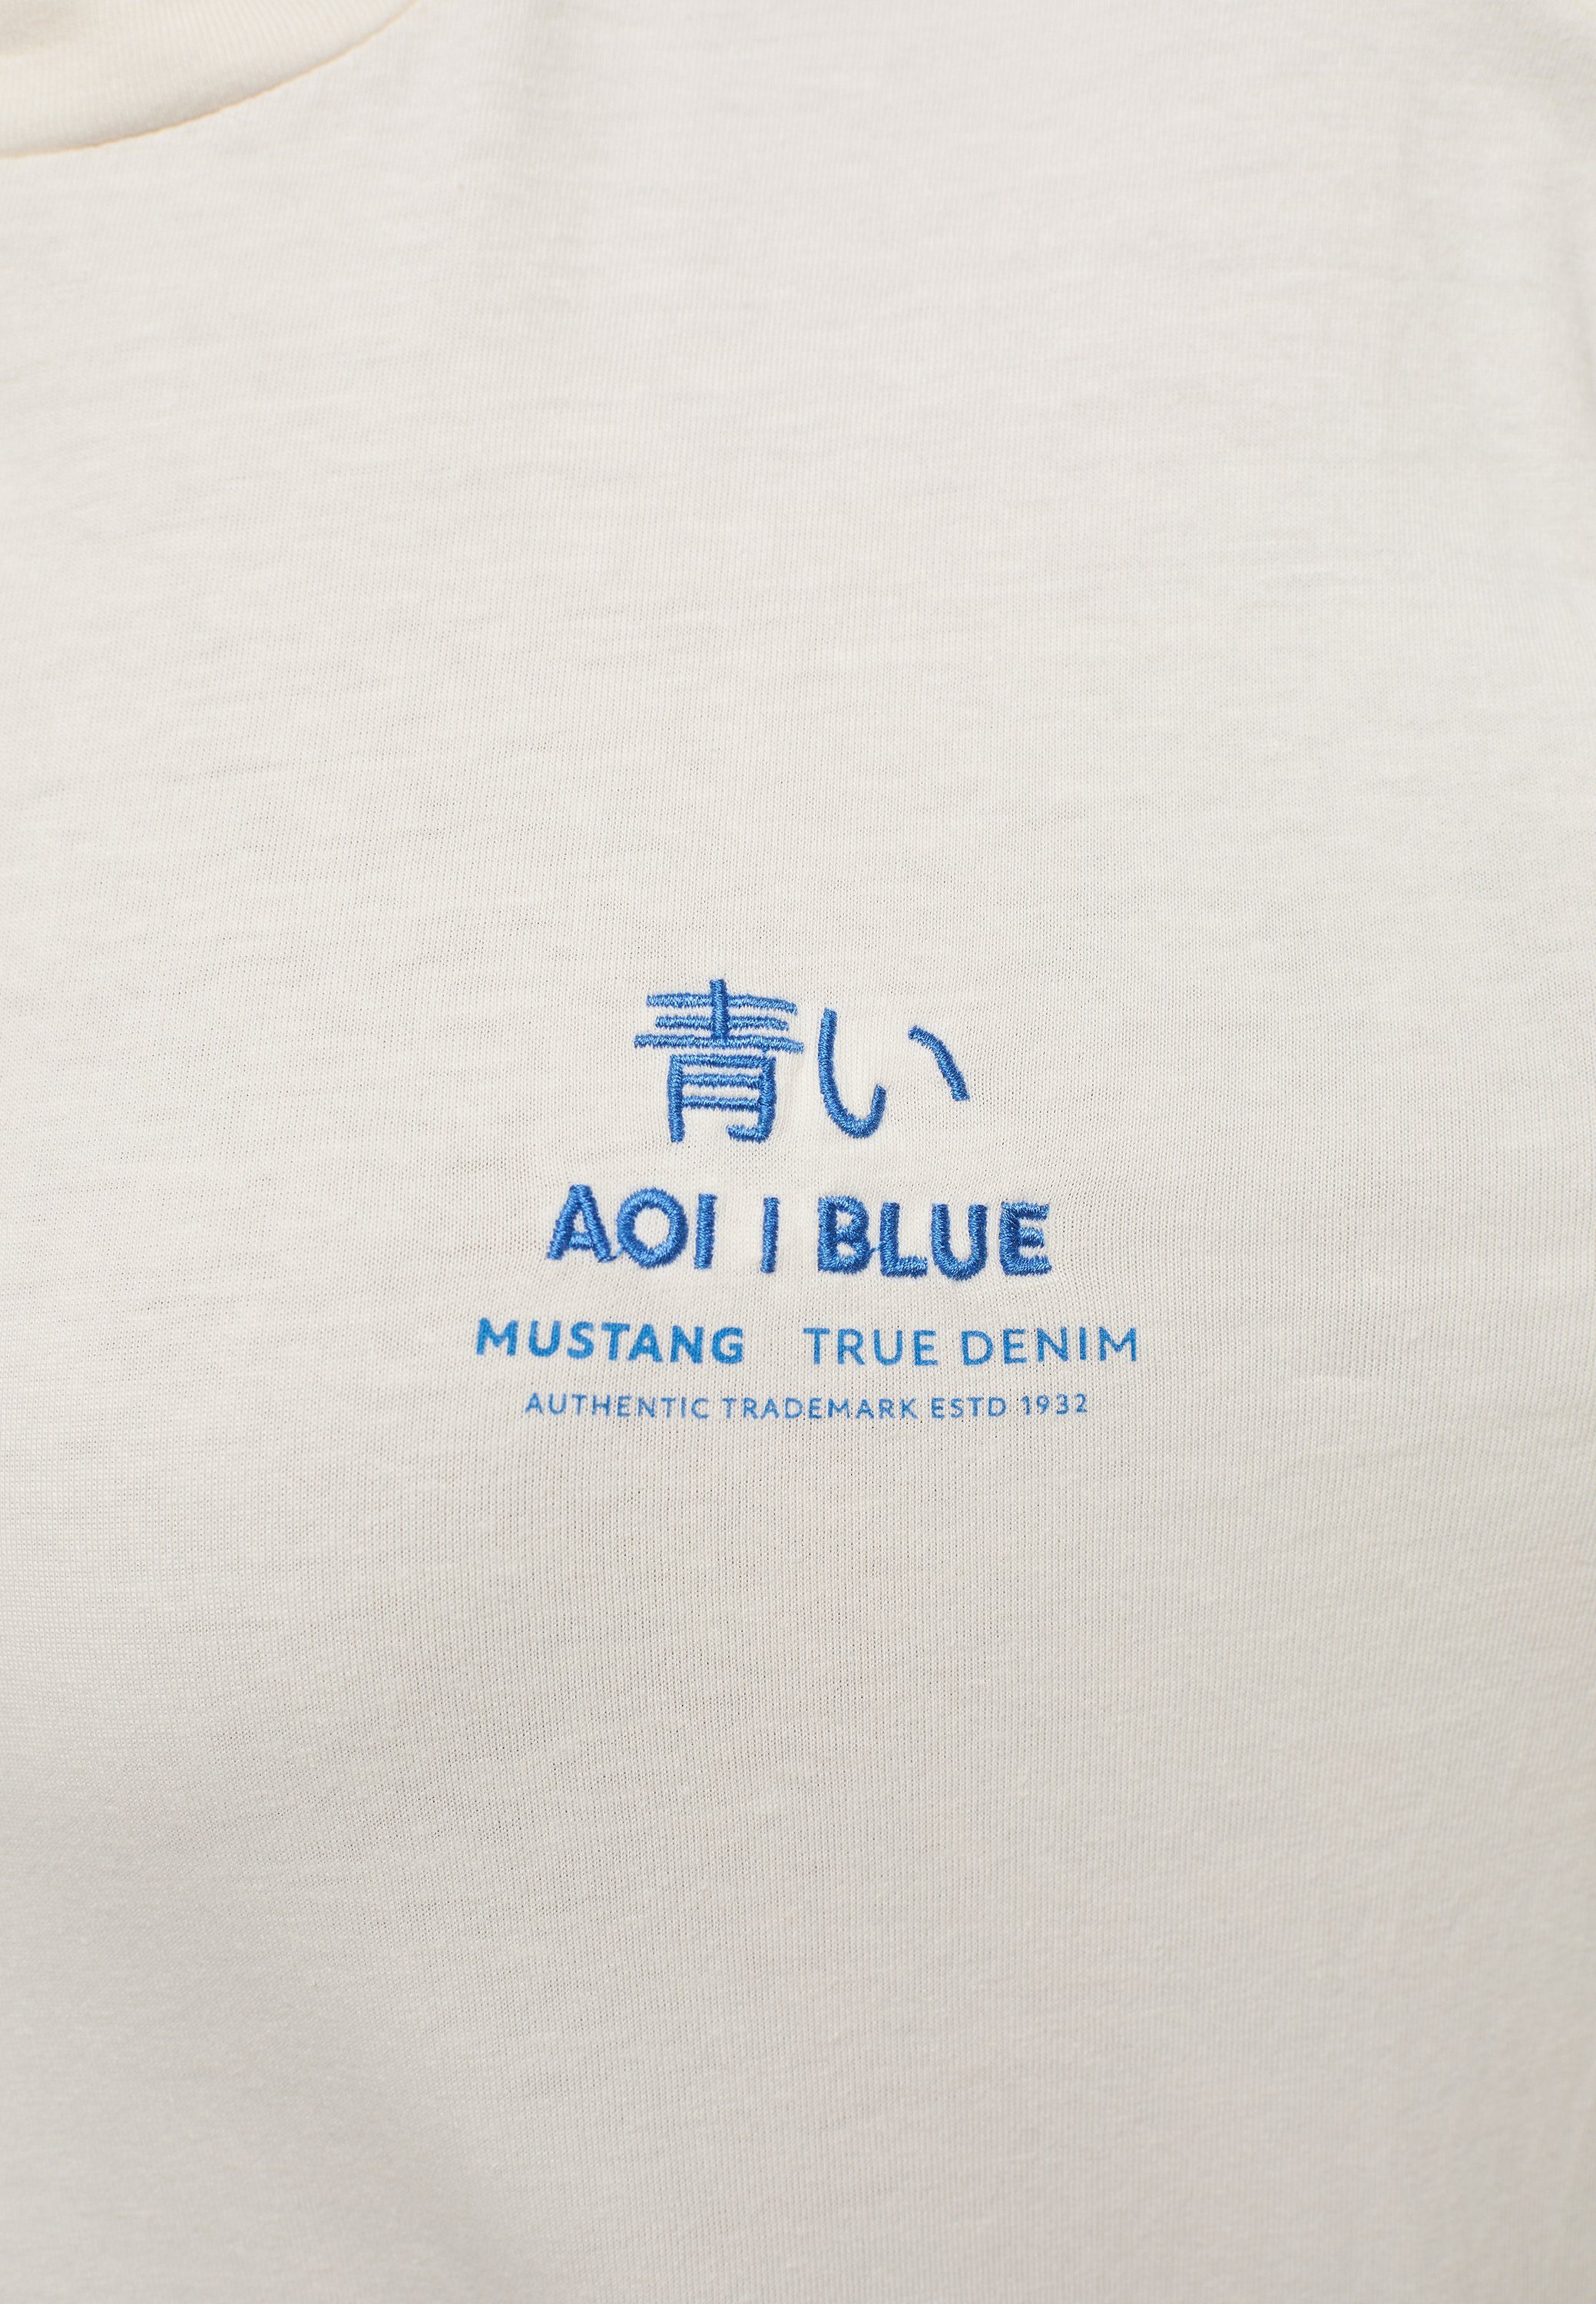 MUSTANG Kurzarmshirt Mustang T-Shirt T-Shirt offwhite | T-Shirts